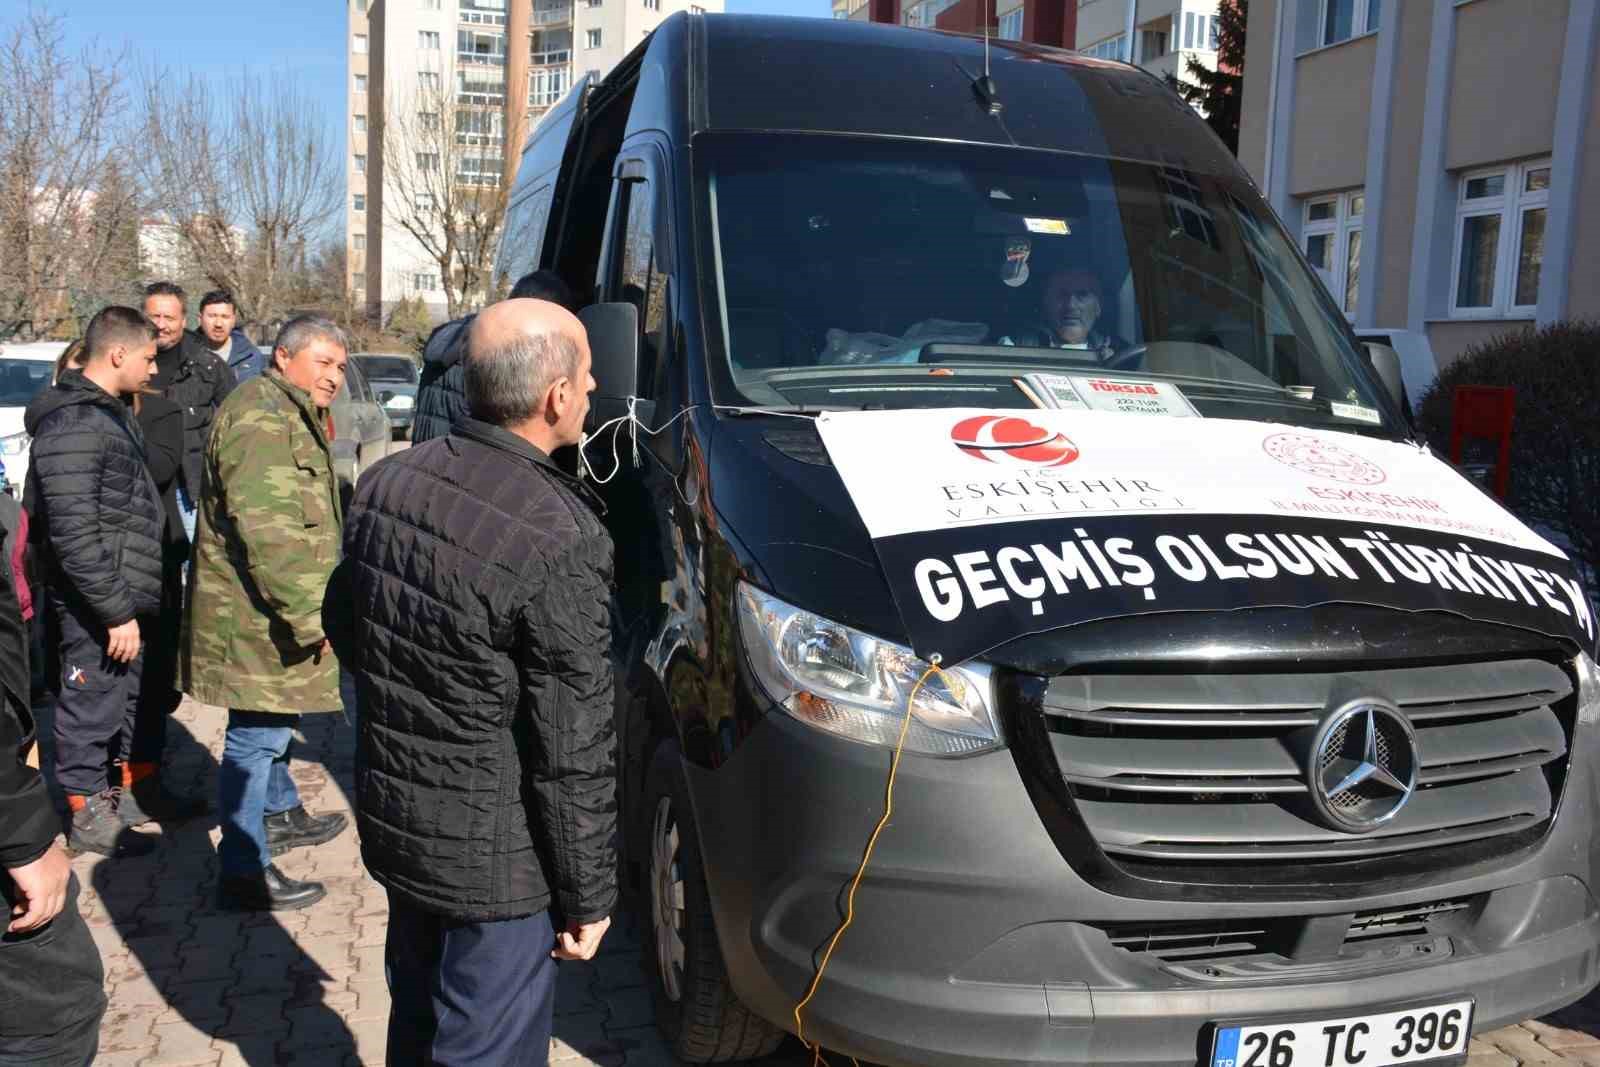 Eskişehir İl Milli Eğitim Müdürlüğü 14 kişilik destek ekibini Hatay’a gönderdi